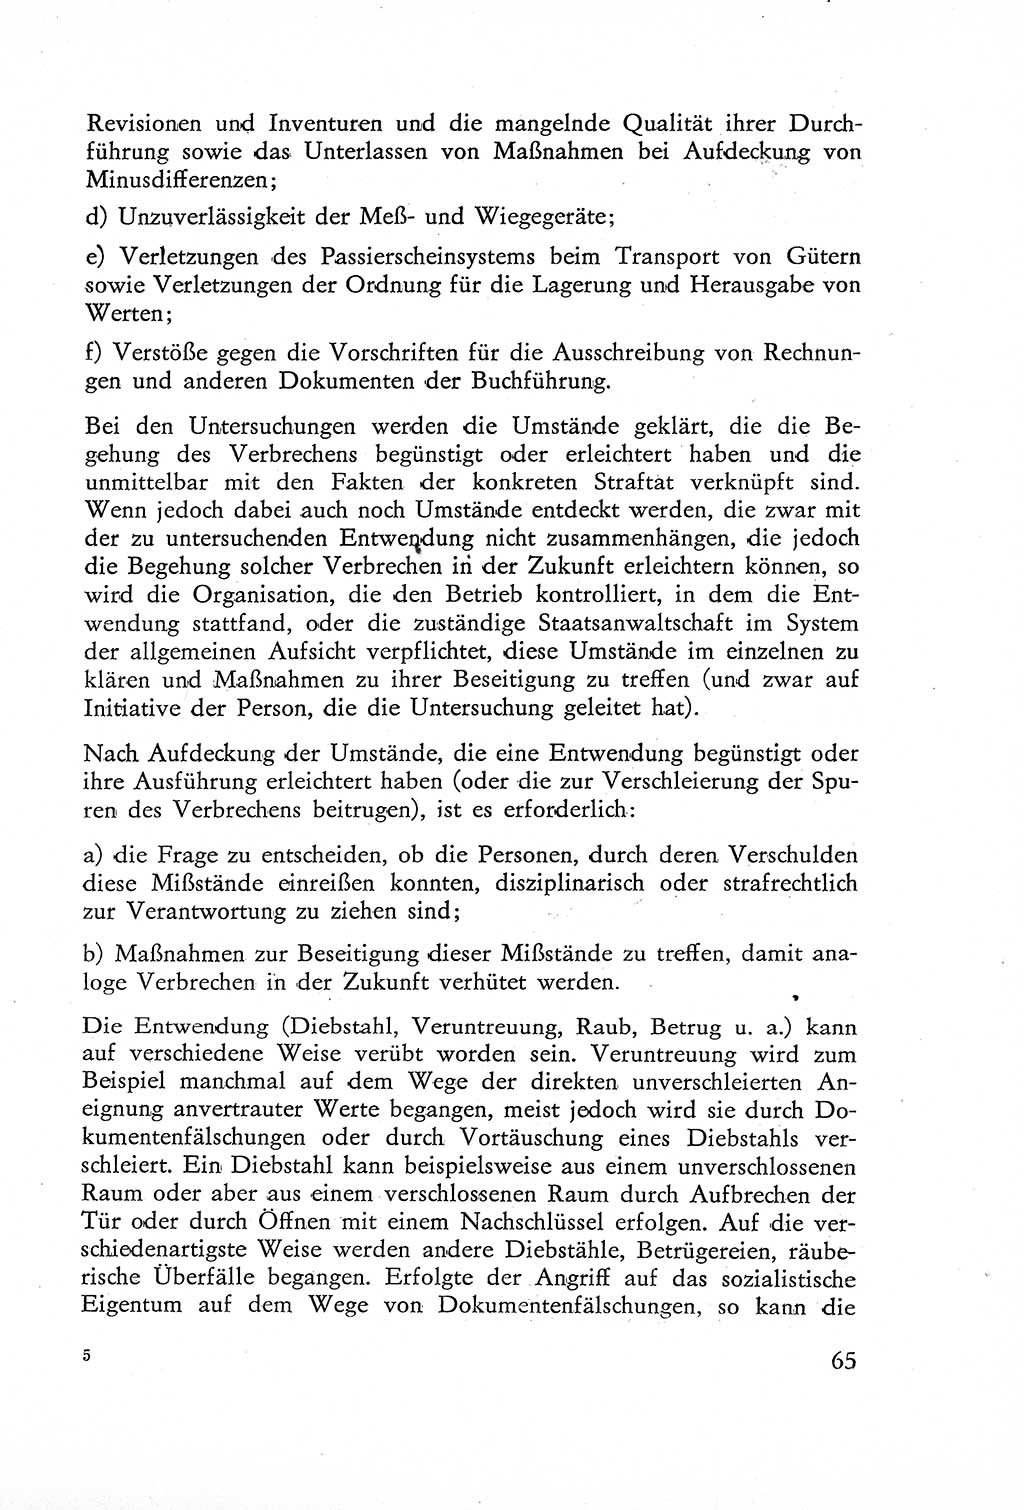 Die Untersuchung einzelner Verbrechensarten [Deutsche Demokratische Republik (DDR)] 1960, Seite 65 (Unters. Verbr.-Art. DDR 1960, S. 65)